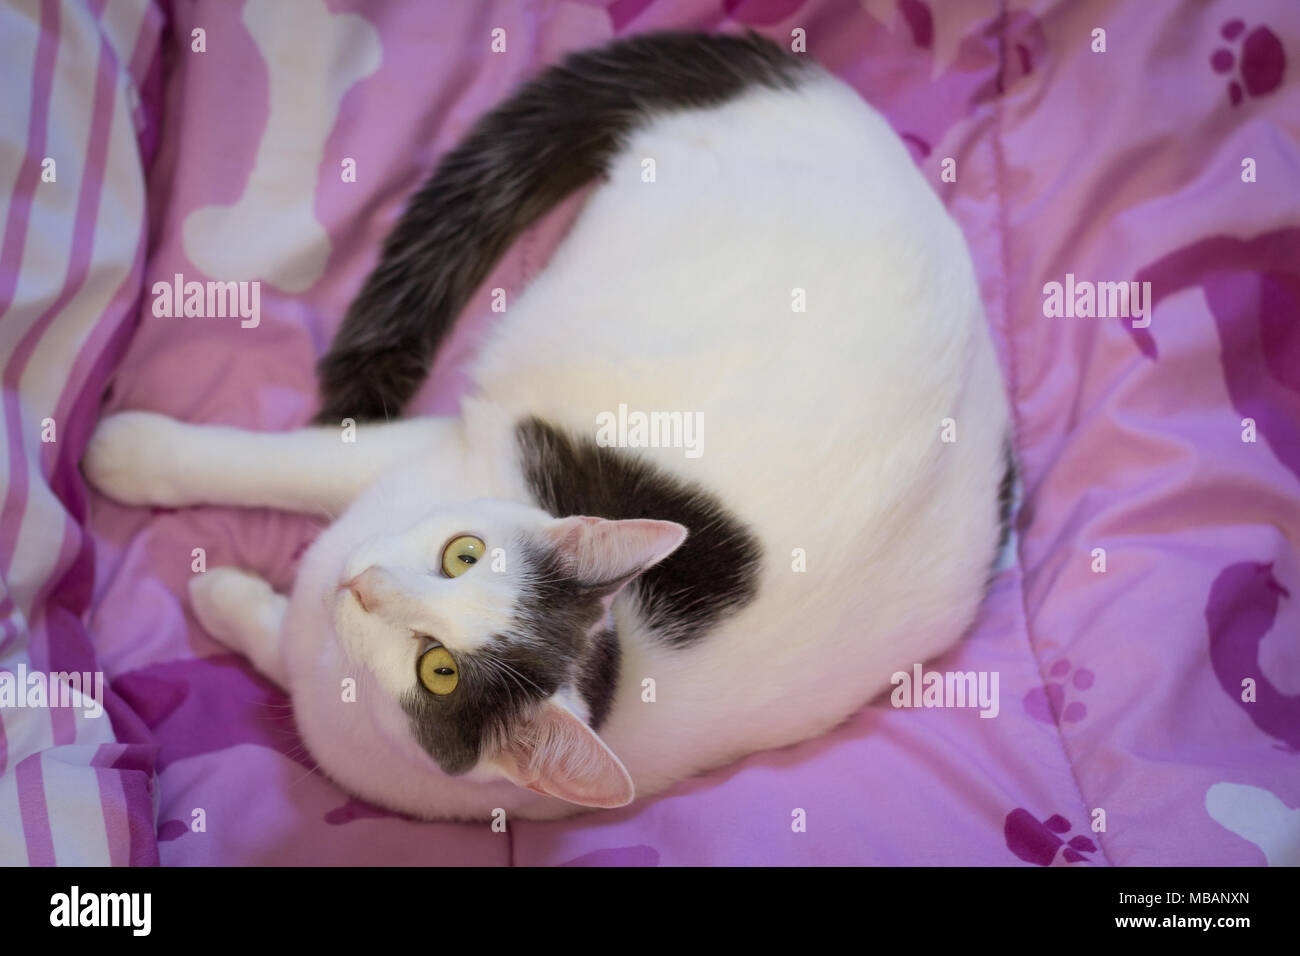 Un gatto sdraiato su un piumino lilla, visto da sopra Foto Stock